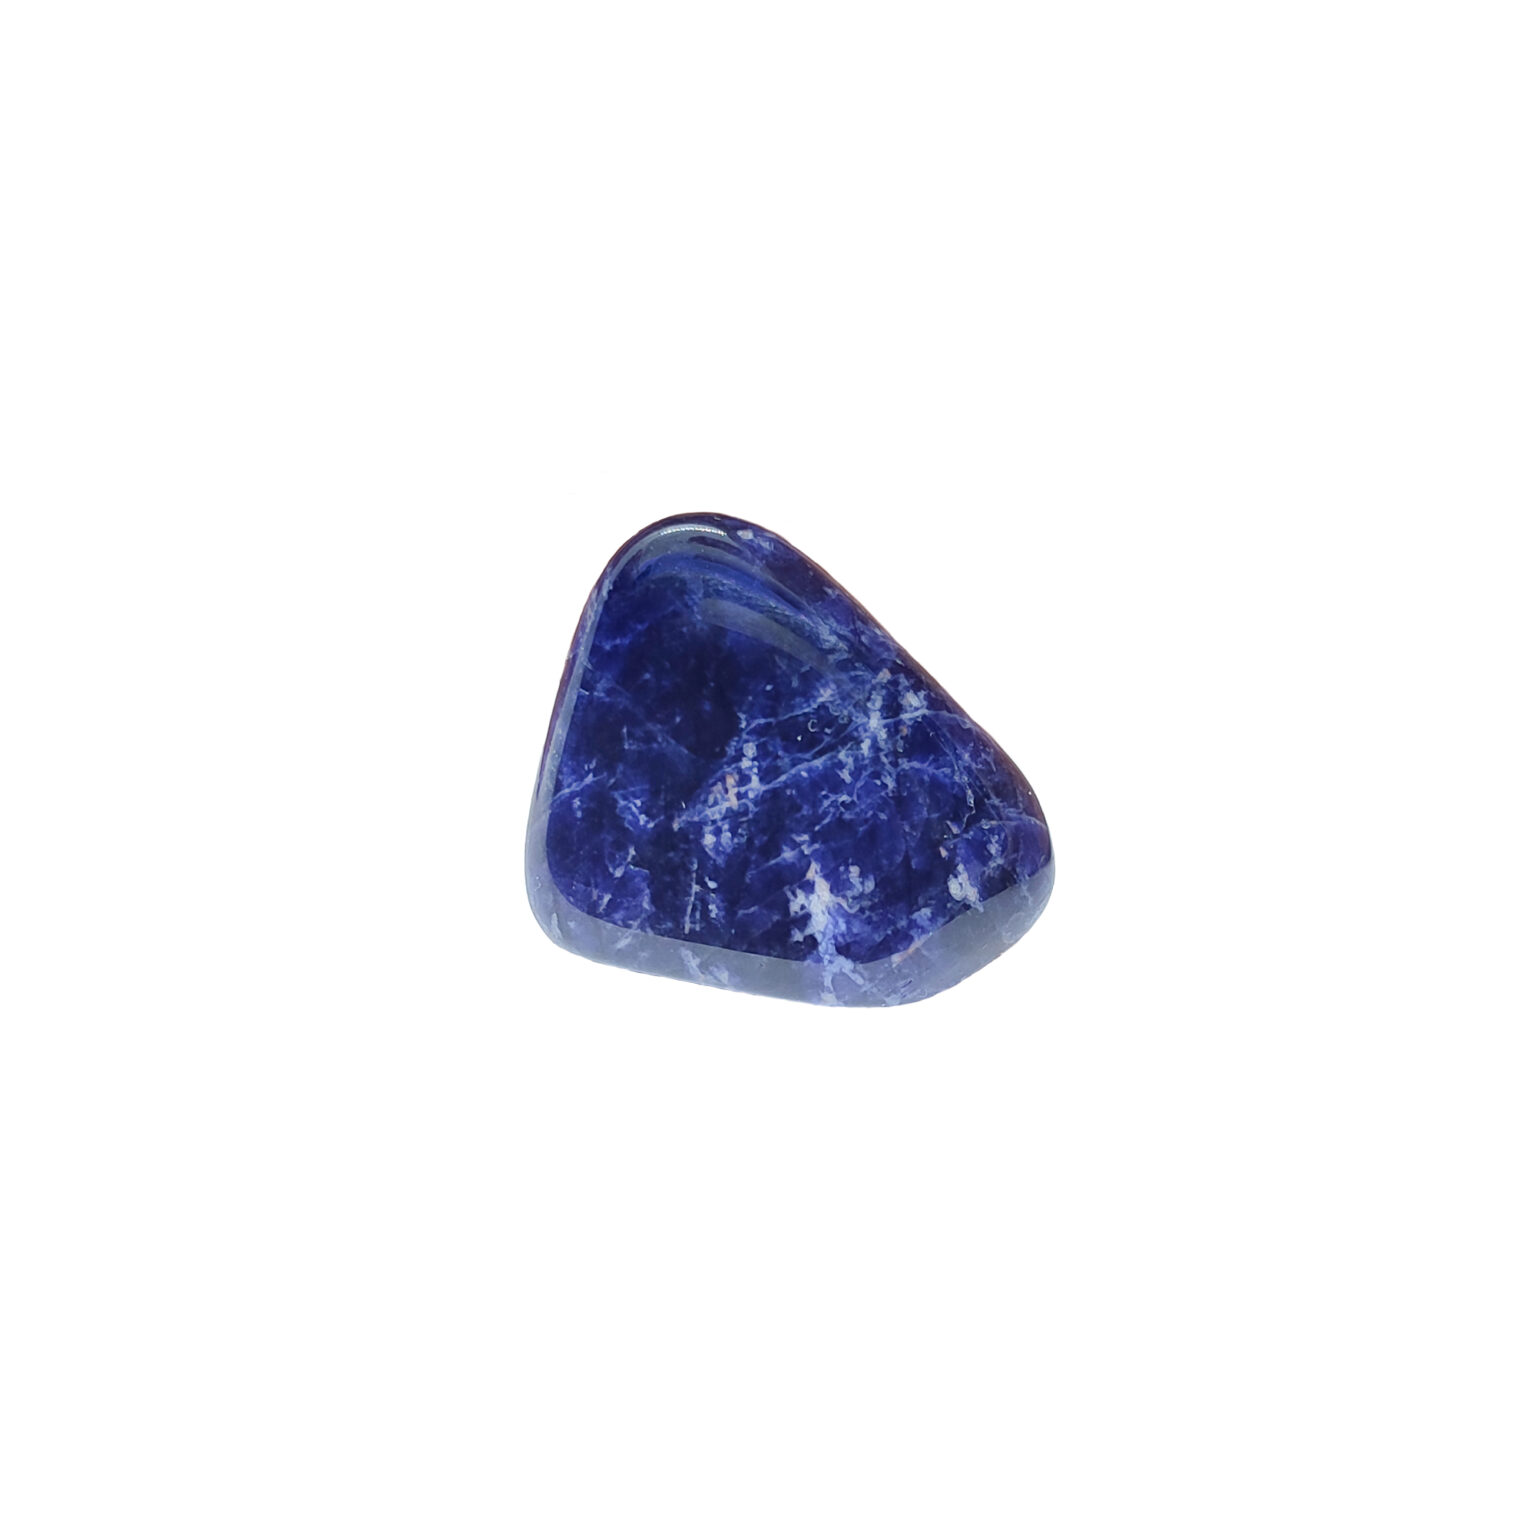 Intensiv blauer Sodalith Trommelstein mit weißen Kristall-Adern.